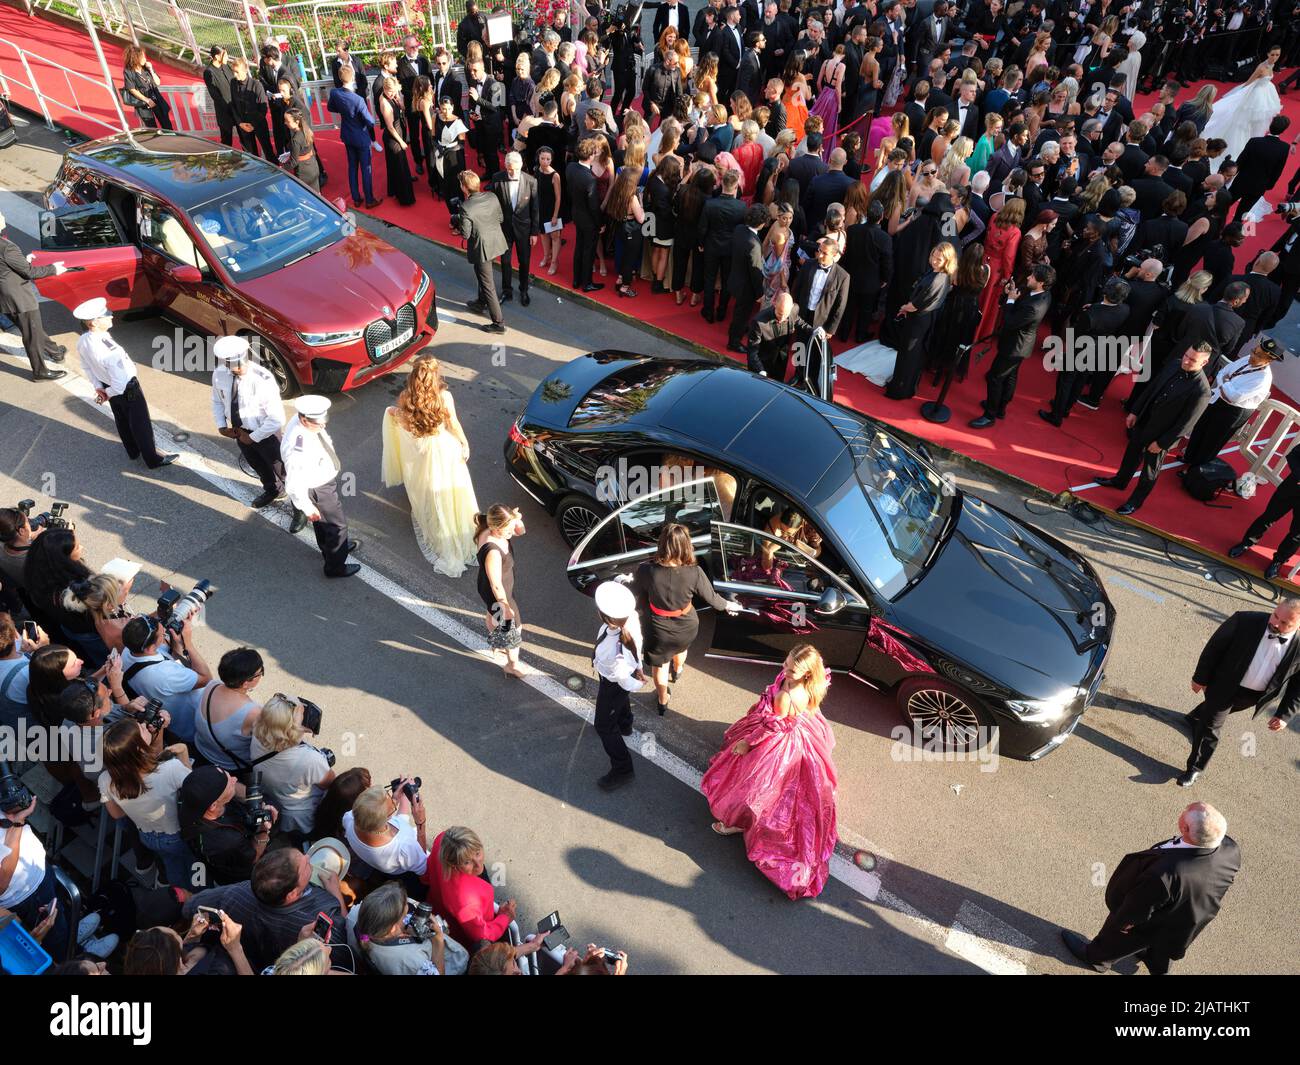 VISTA AÉREA desde un mástil de 6 metros. Llegada de la gente de la industria cinematográfica a la alfombra roja del Palais des Festivals en Cannes. Riviera Francesa, Francia. Foto de stock